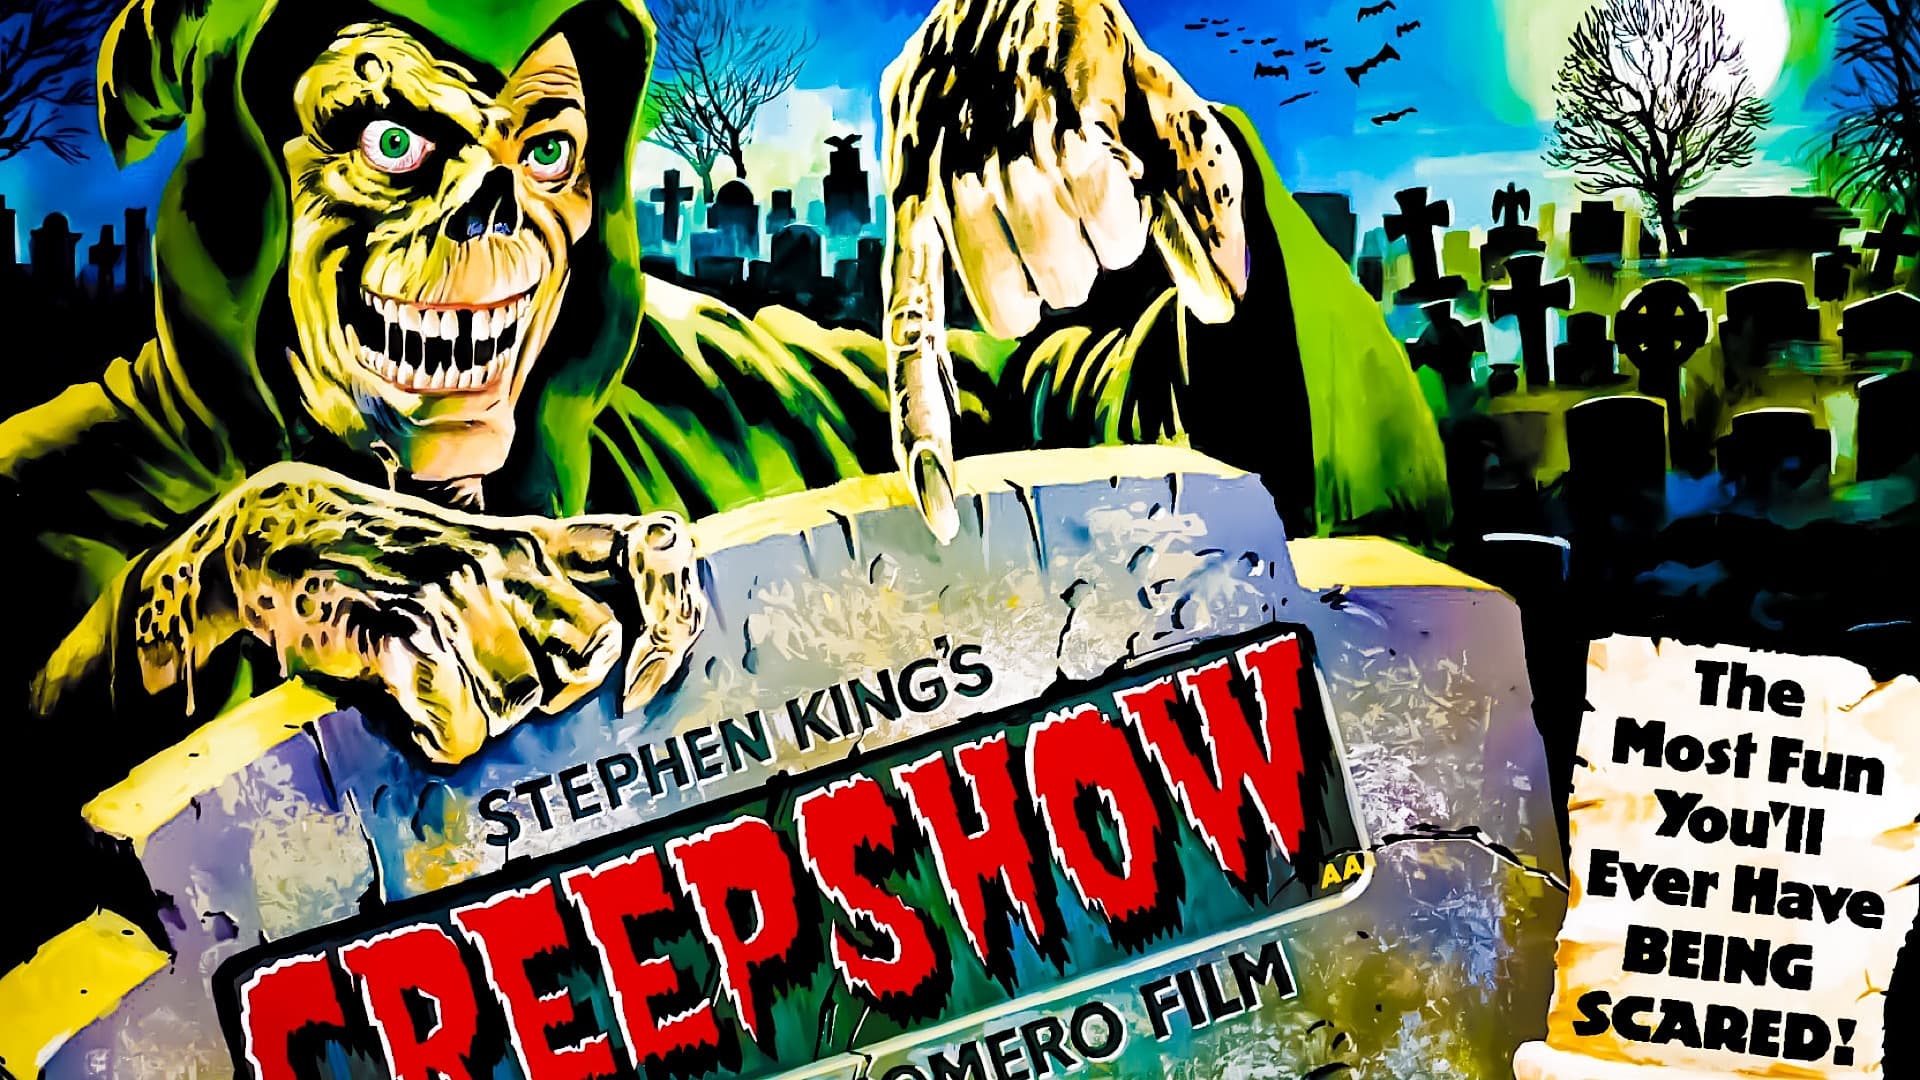 Creepshow - A rémmesék könyve (1982)